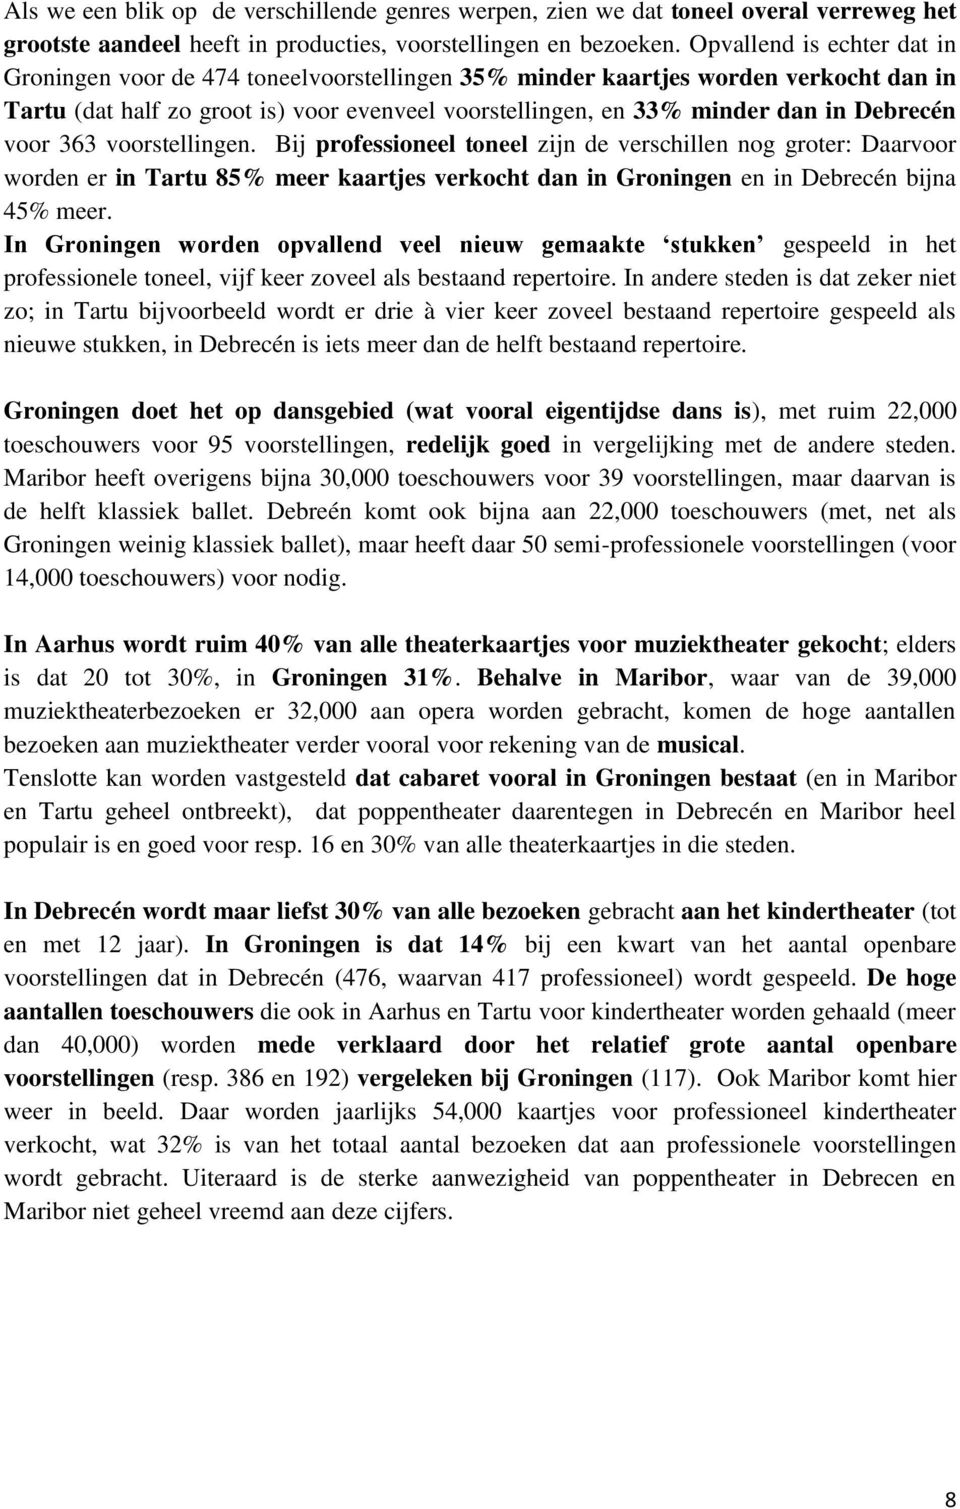 Debrecén voor 363 voorstellingen. Bij professioneel toneel zijn de verschillen nog groter: Daarvoor worden er in Tartu 85% meer kaartjes verkocht dan in Groningen en in Debrecén bijna 45% meer.